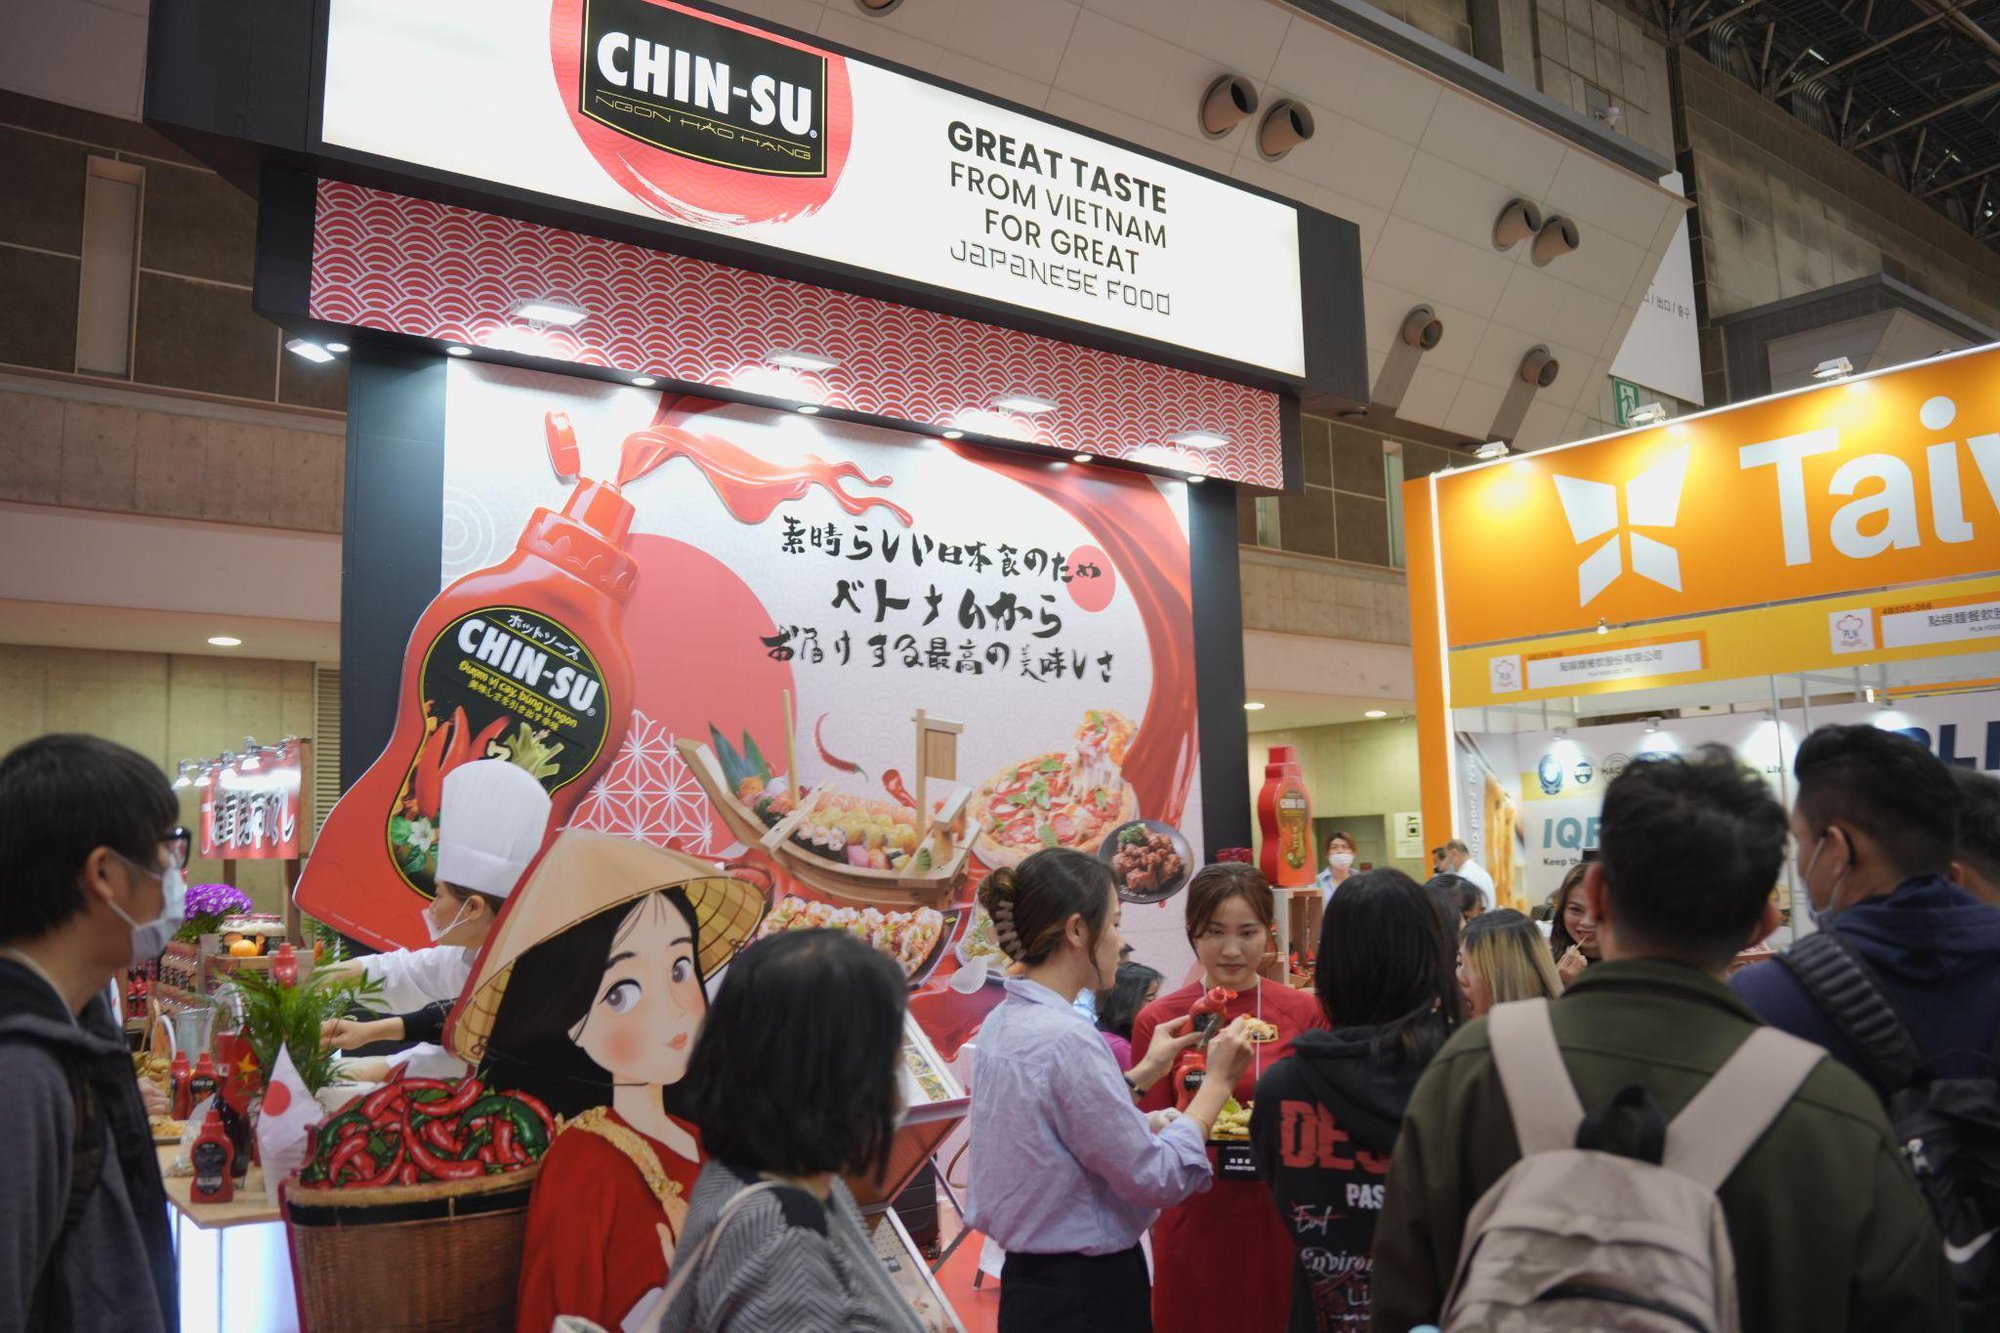 Tương ớt Chin-su gây ấn tượng mạnh tại Nhật Bản, ra mắt 5 hương vị mới - Ảnh 4.